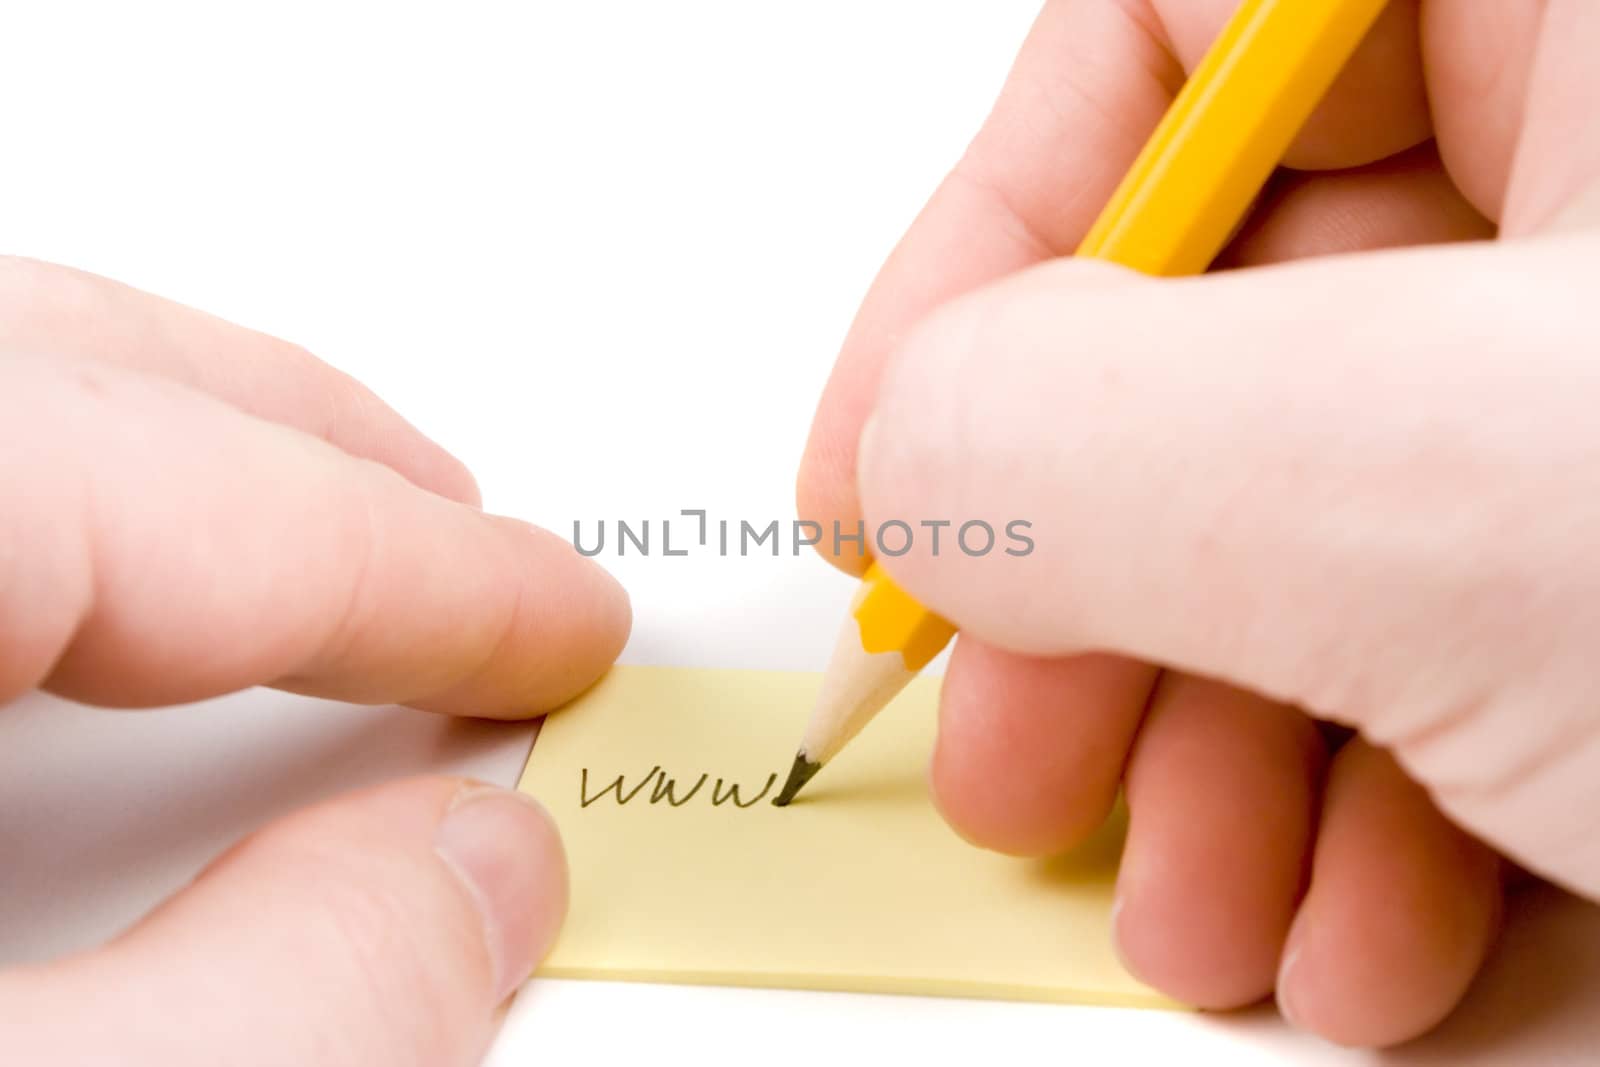 Writing web address on yellow paper